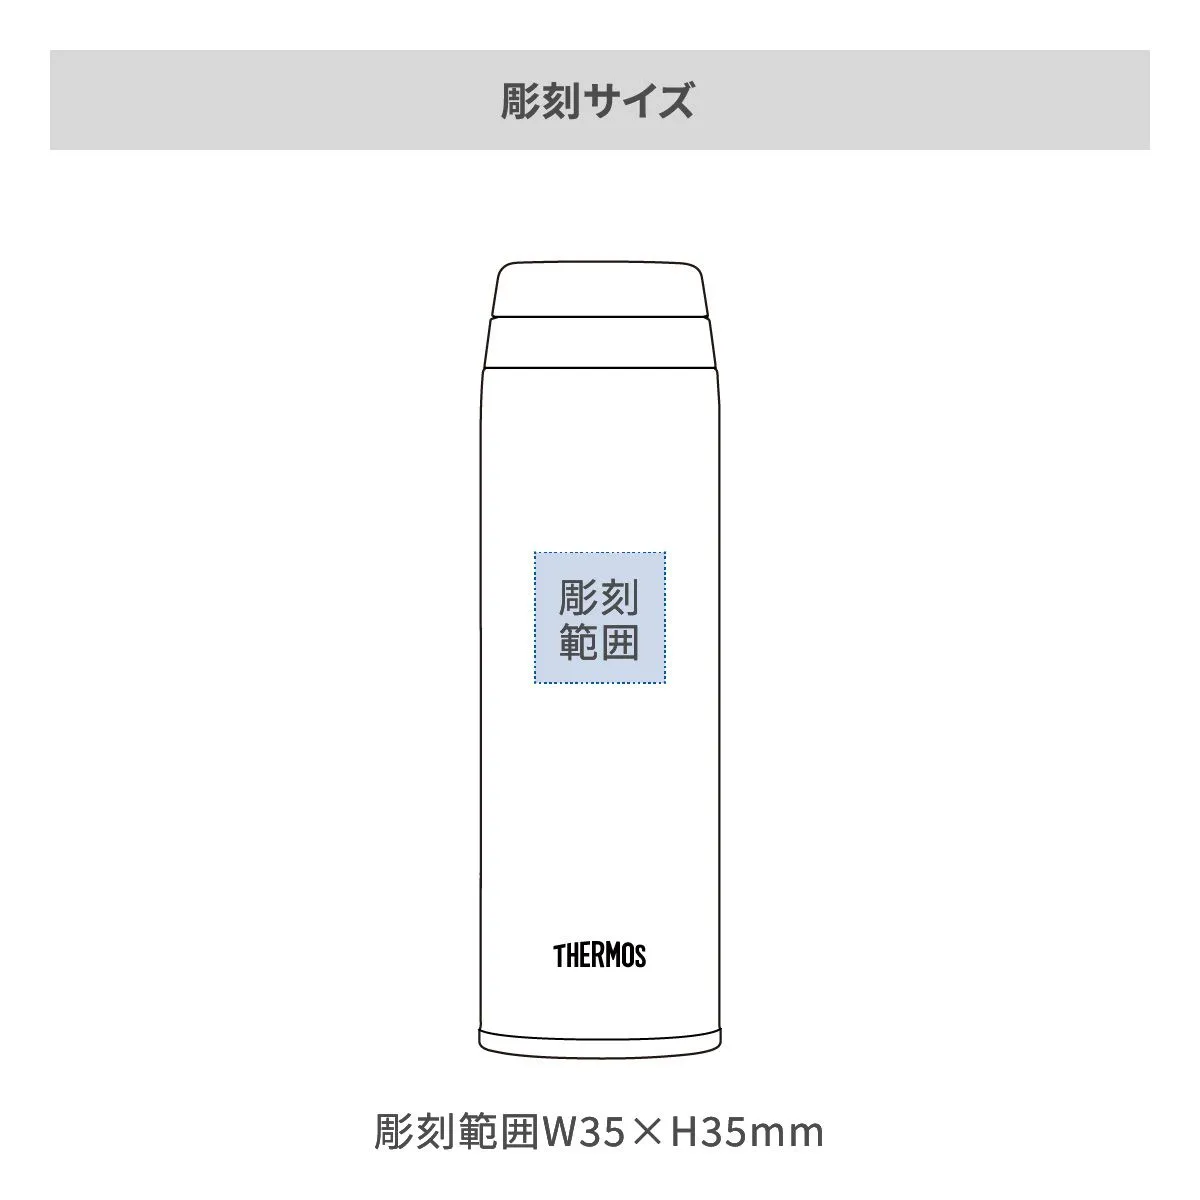 サーモス 真空断熱ケータイマグ 500ml【オリジナルステンレスボトル / レーザー彫刻】 画像2